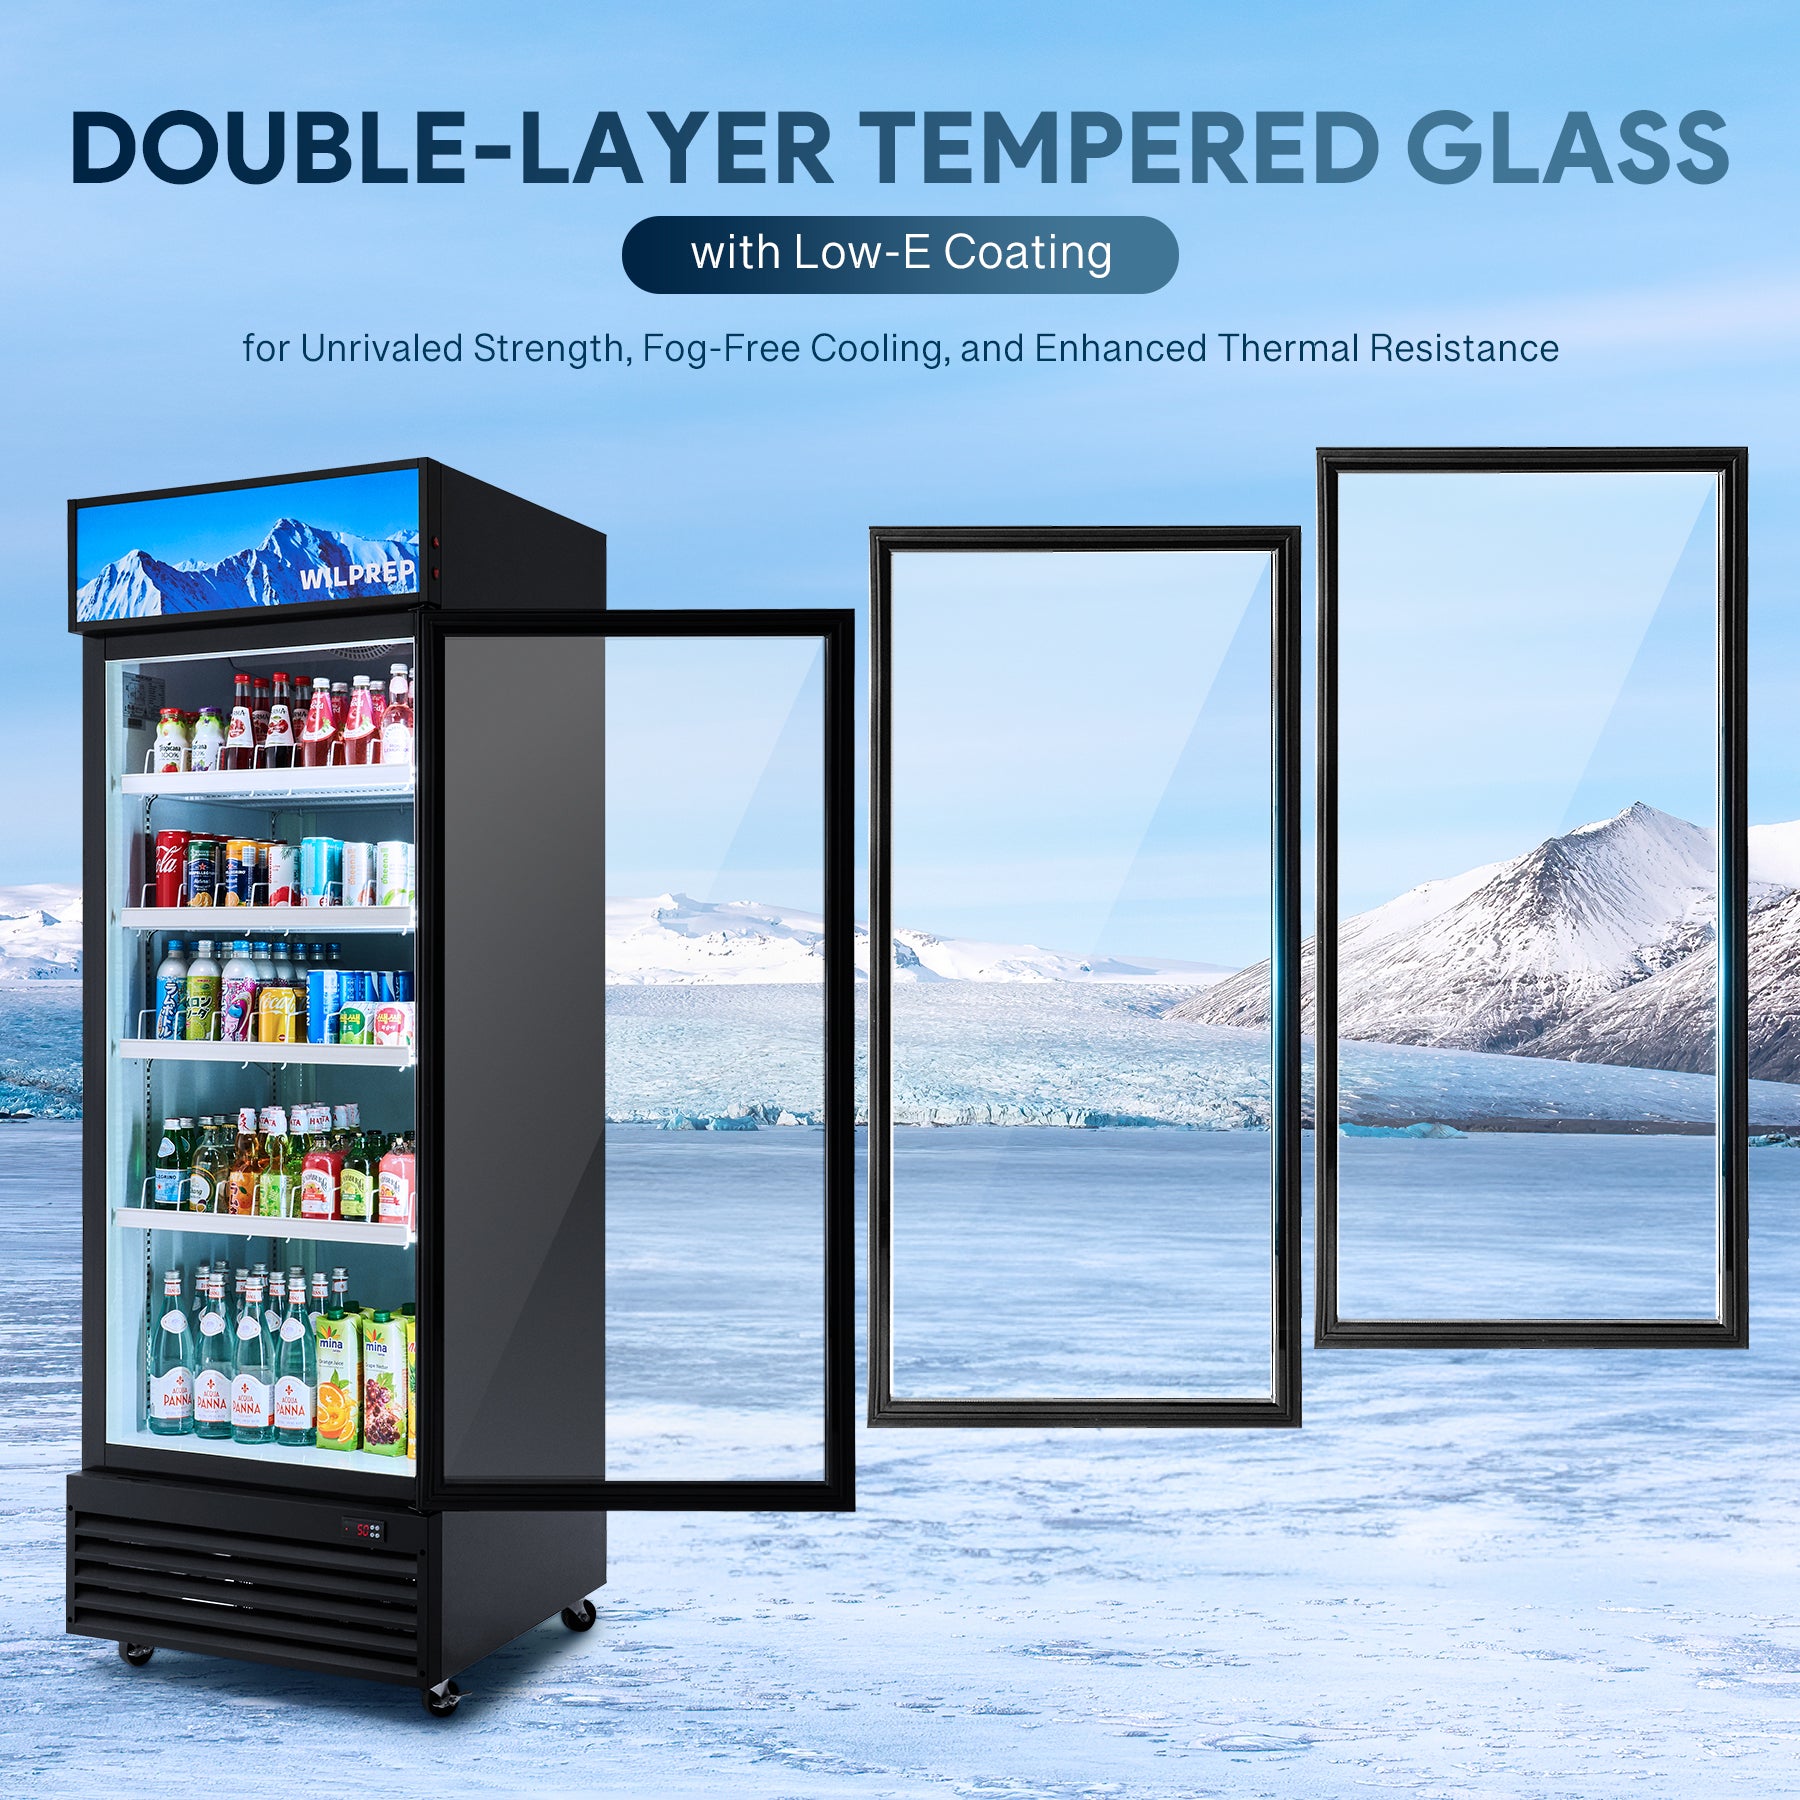 Wilprep 27.6 inch commercial refrigerator with glass door